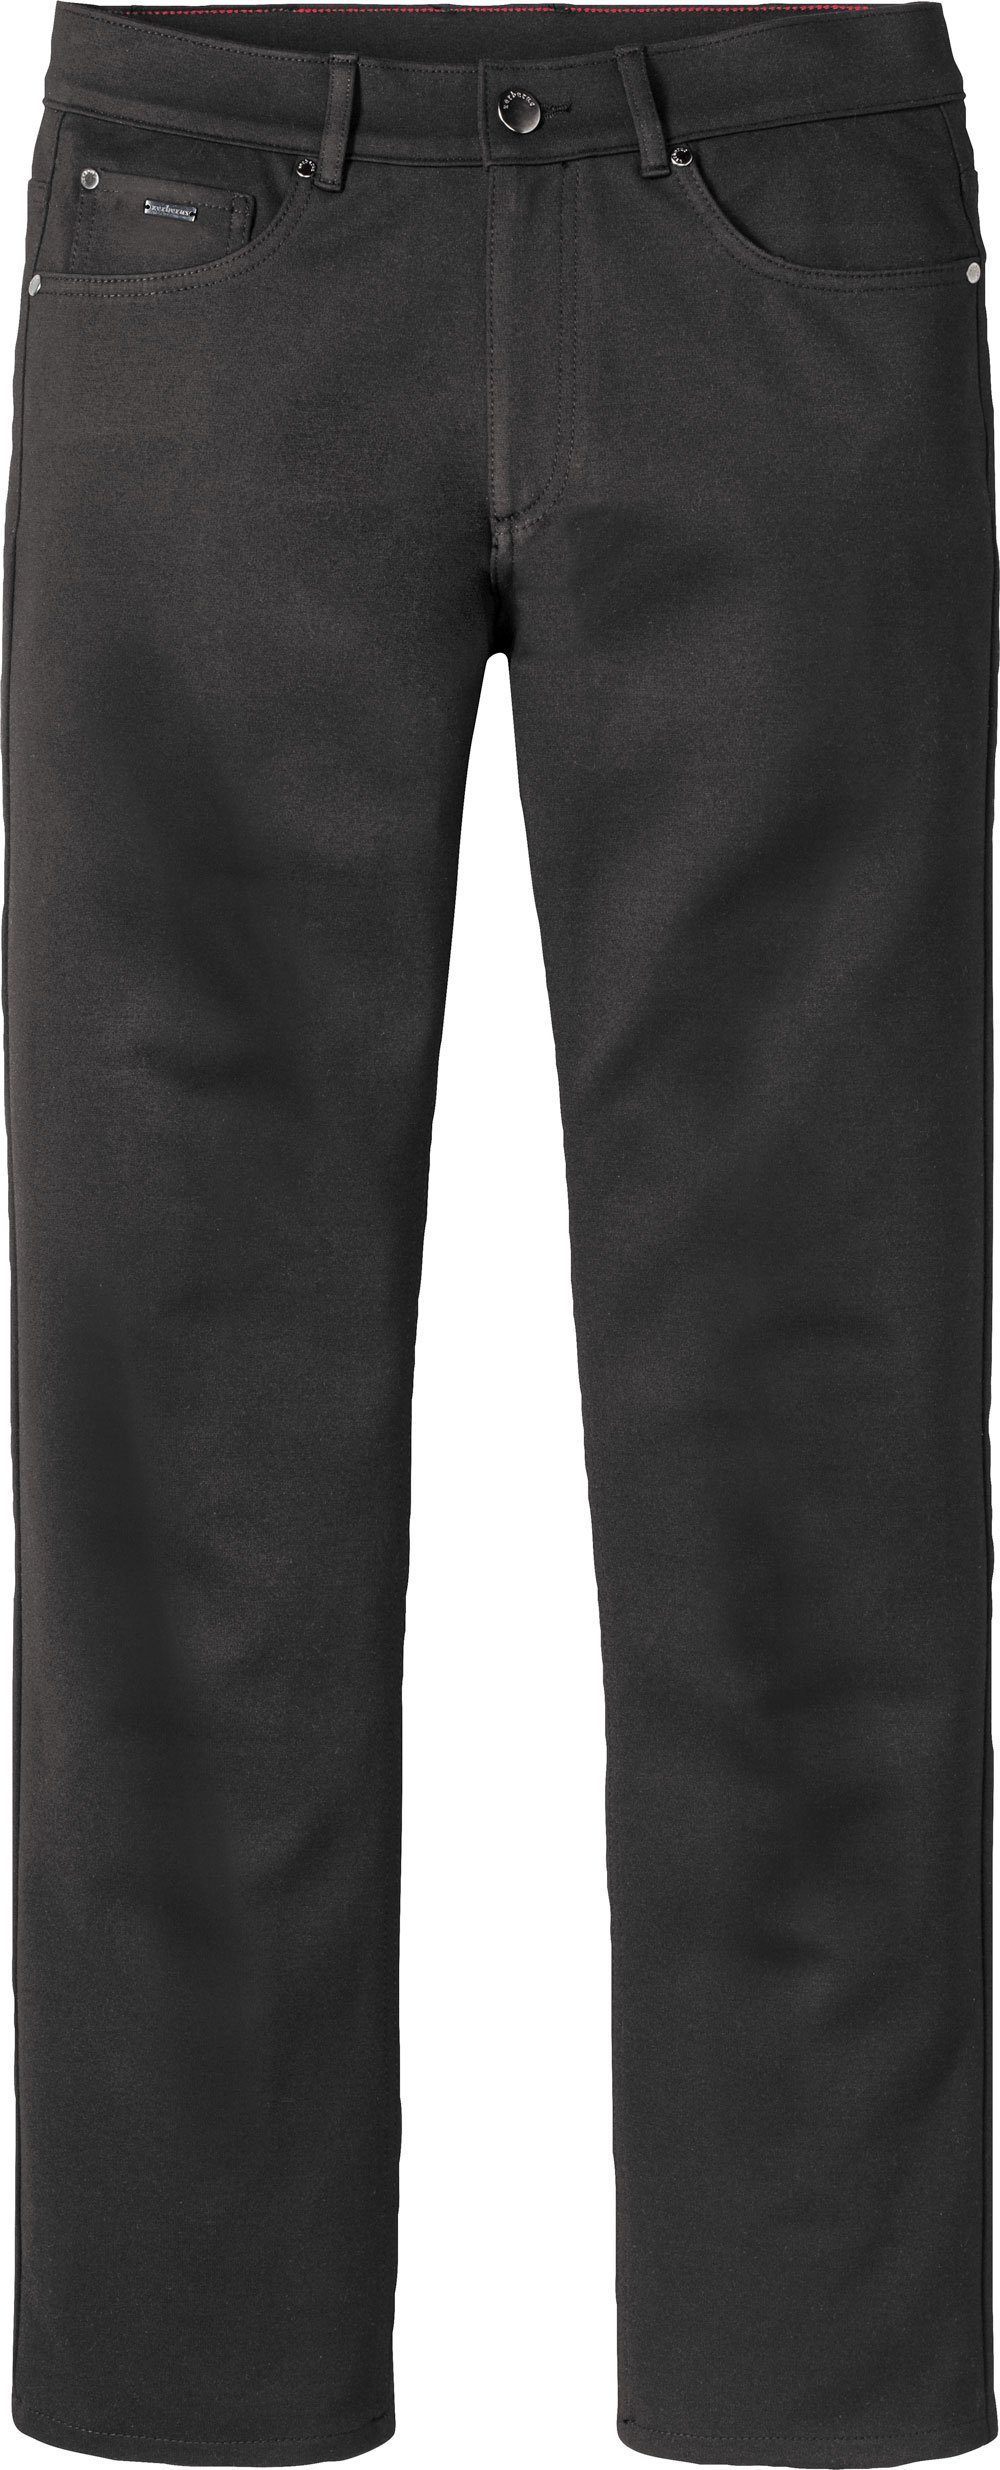 Passform, im 5-Pocket-Stil perfekte Jerseyhose Zerberus schwarz lässigen